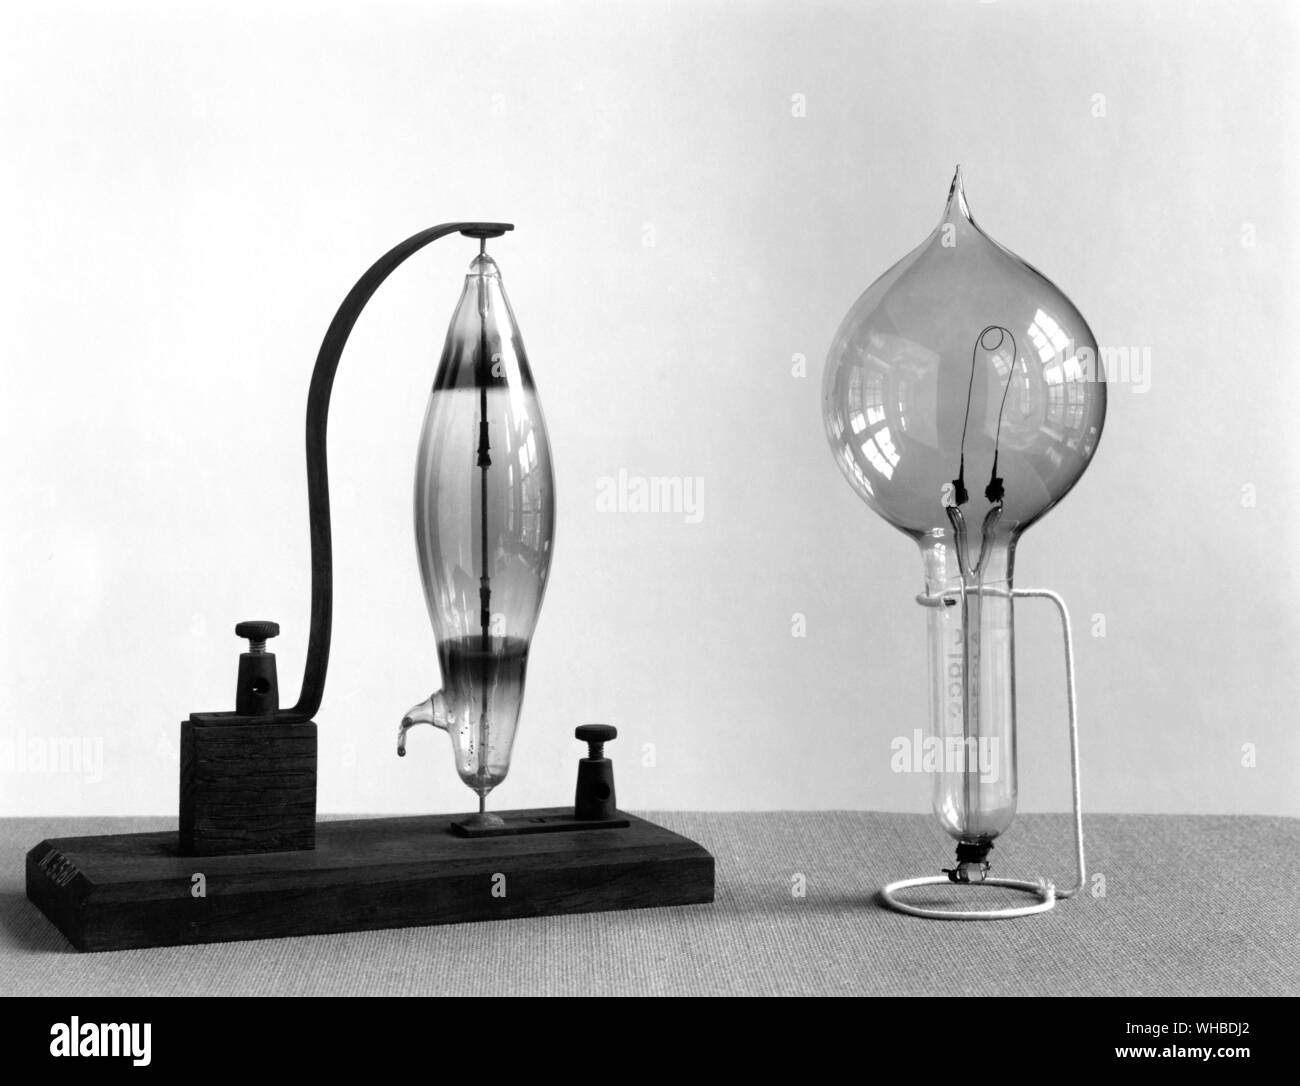 Swan experimentelle carbon Druckbleistift Lampe 1878-9 - zwei frühe kommerzielle Lampentypen c 1880 - durch den englischen Chemiker, Joseph Swan (1827-1914). Diese Lampe ist eine frühe Kohlenstoff und Stange Glühlampe Glühlampe elektrische Lampe. . Stockfoto